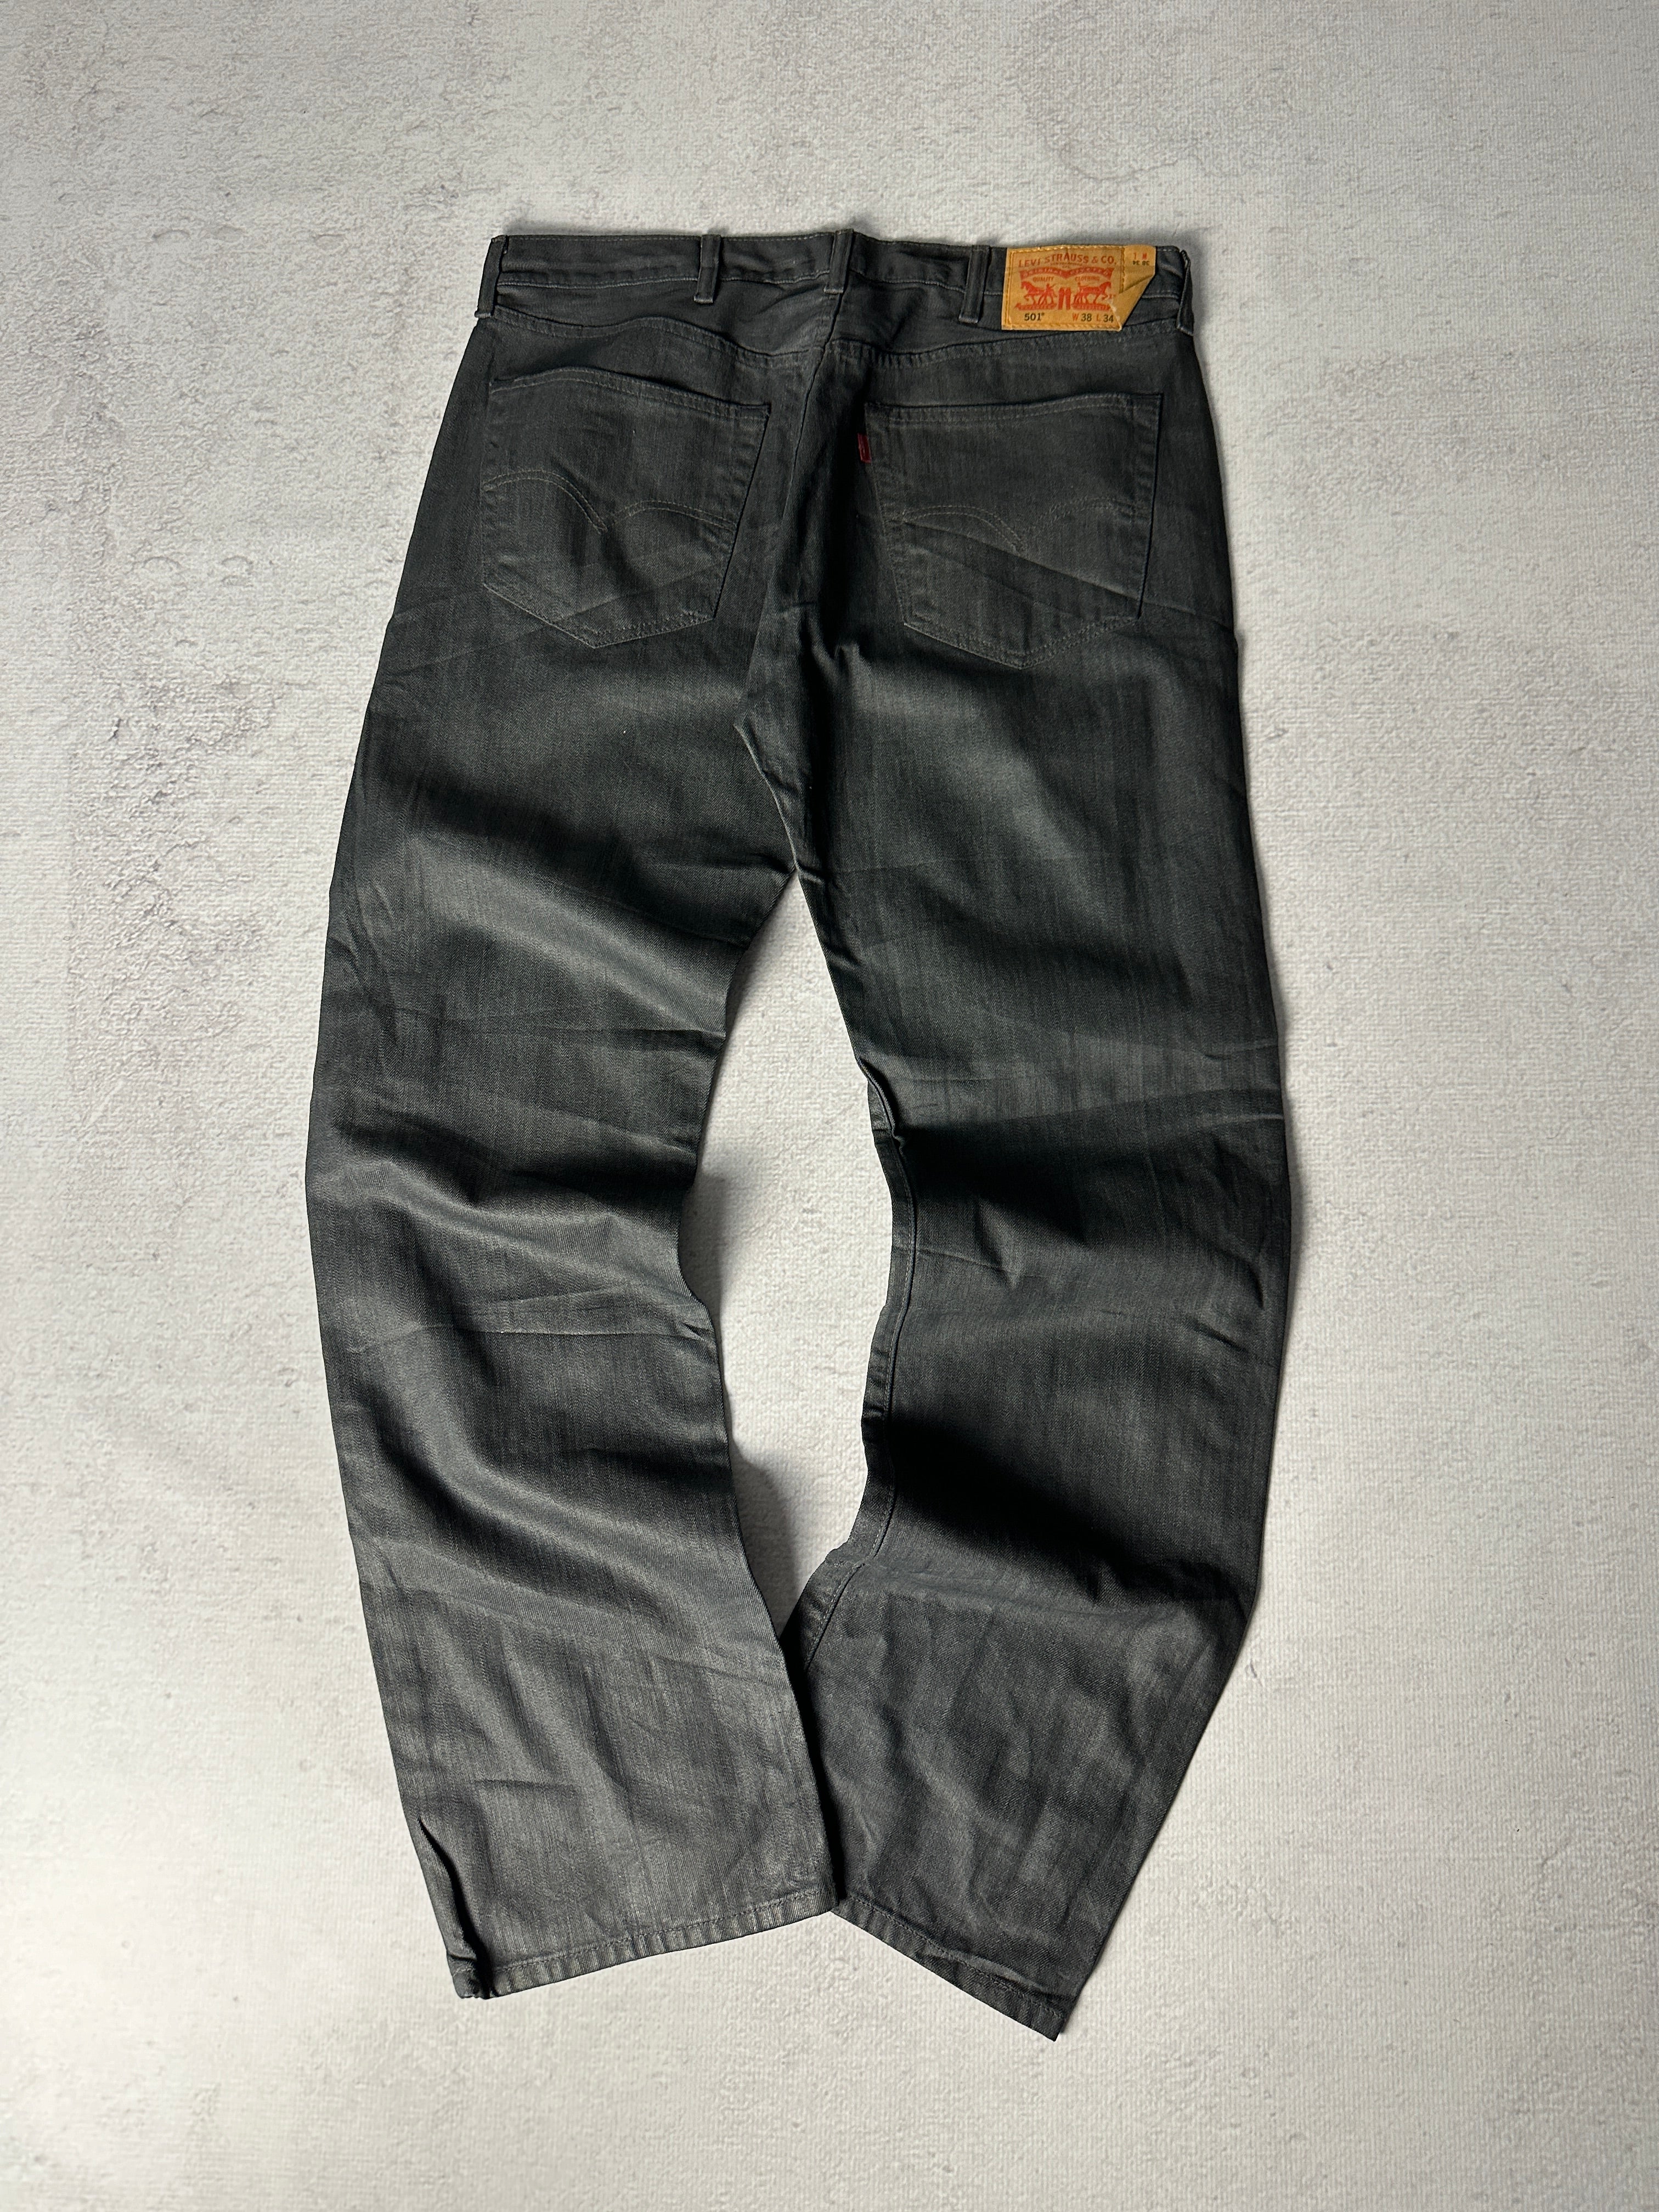 Vintage Levis 501 Jeans - Men's 38W34L